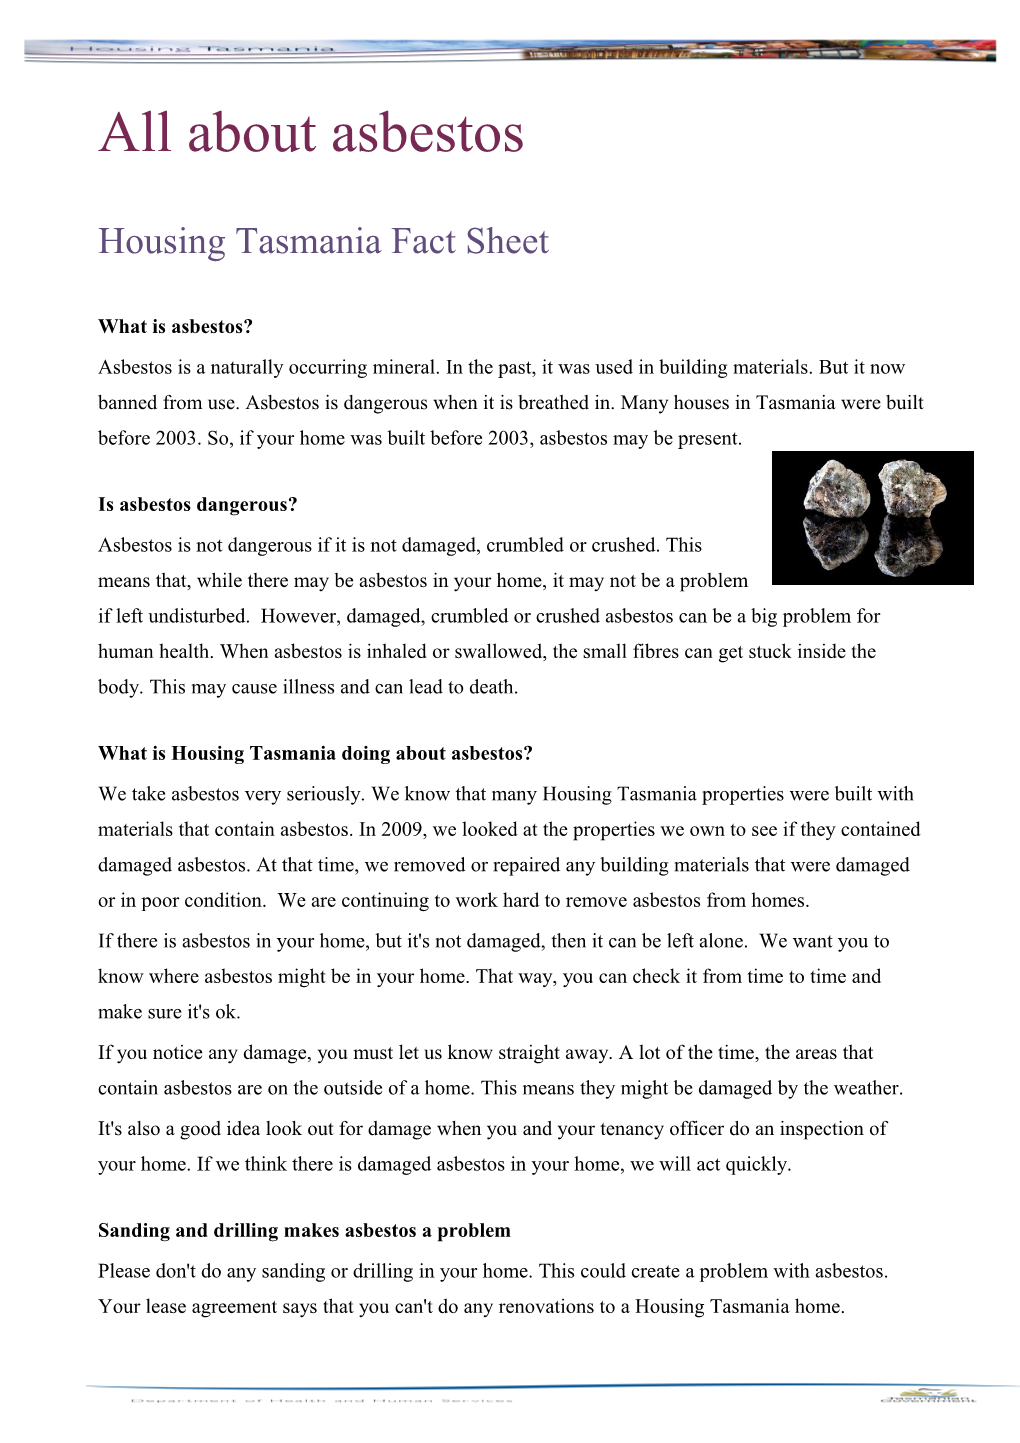 Housing Tasmania Fact Sheet